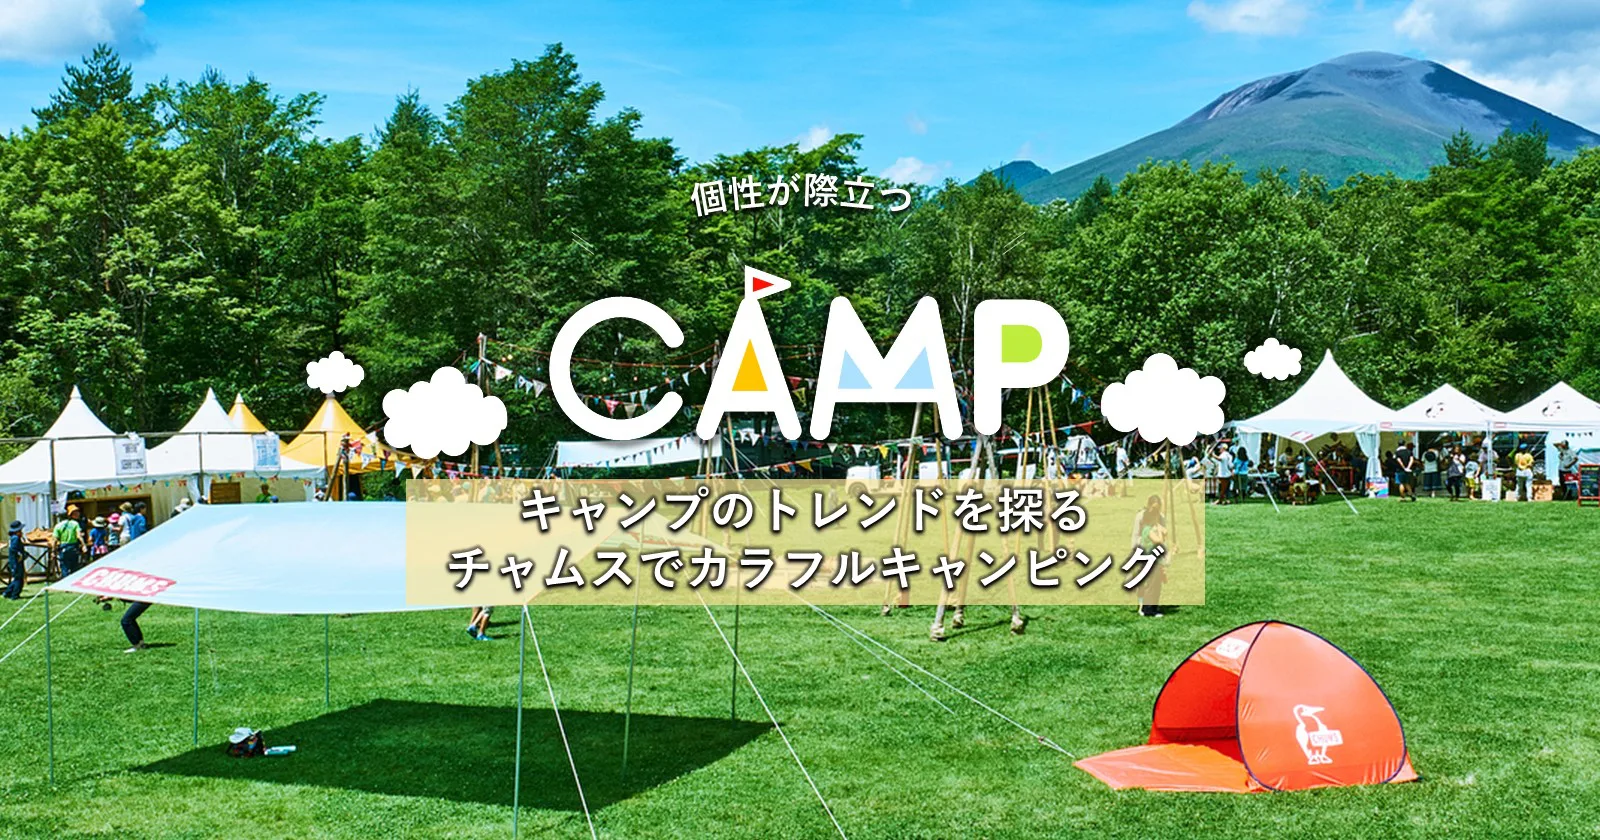 アウトドア テント/タープ キャンプのトレンドを探る「チャムスでカラフルキャンピング 